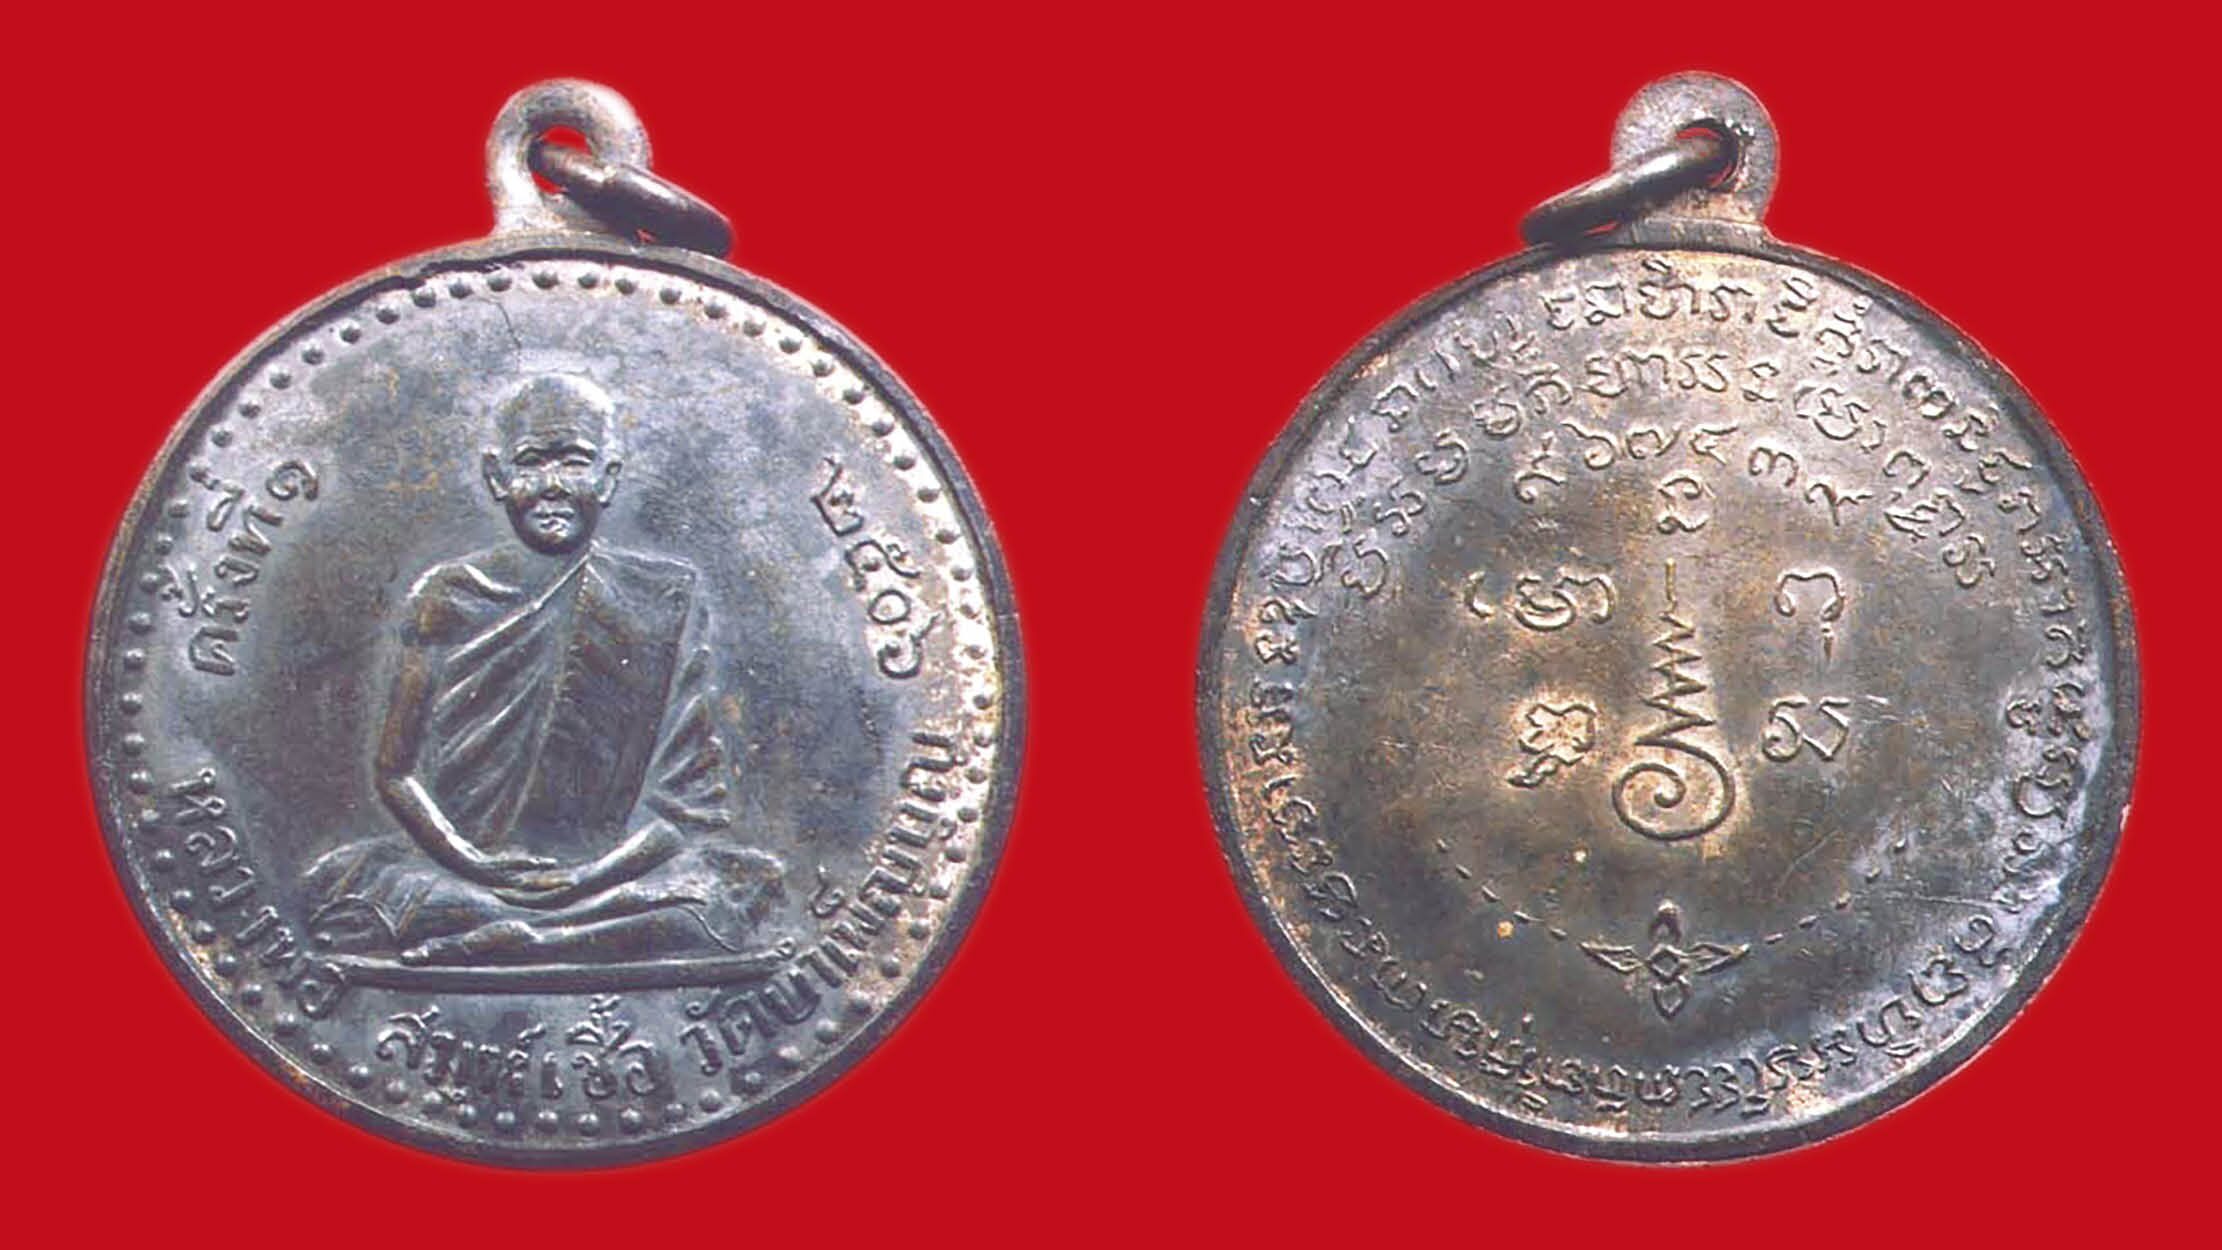 รอบด้านวงการพระ - เหรียญหลวงพ่อเชื้อ เหรียญเจ้าสัว หลวงปู่บุญ เหรียญพระธาตุพนม